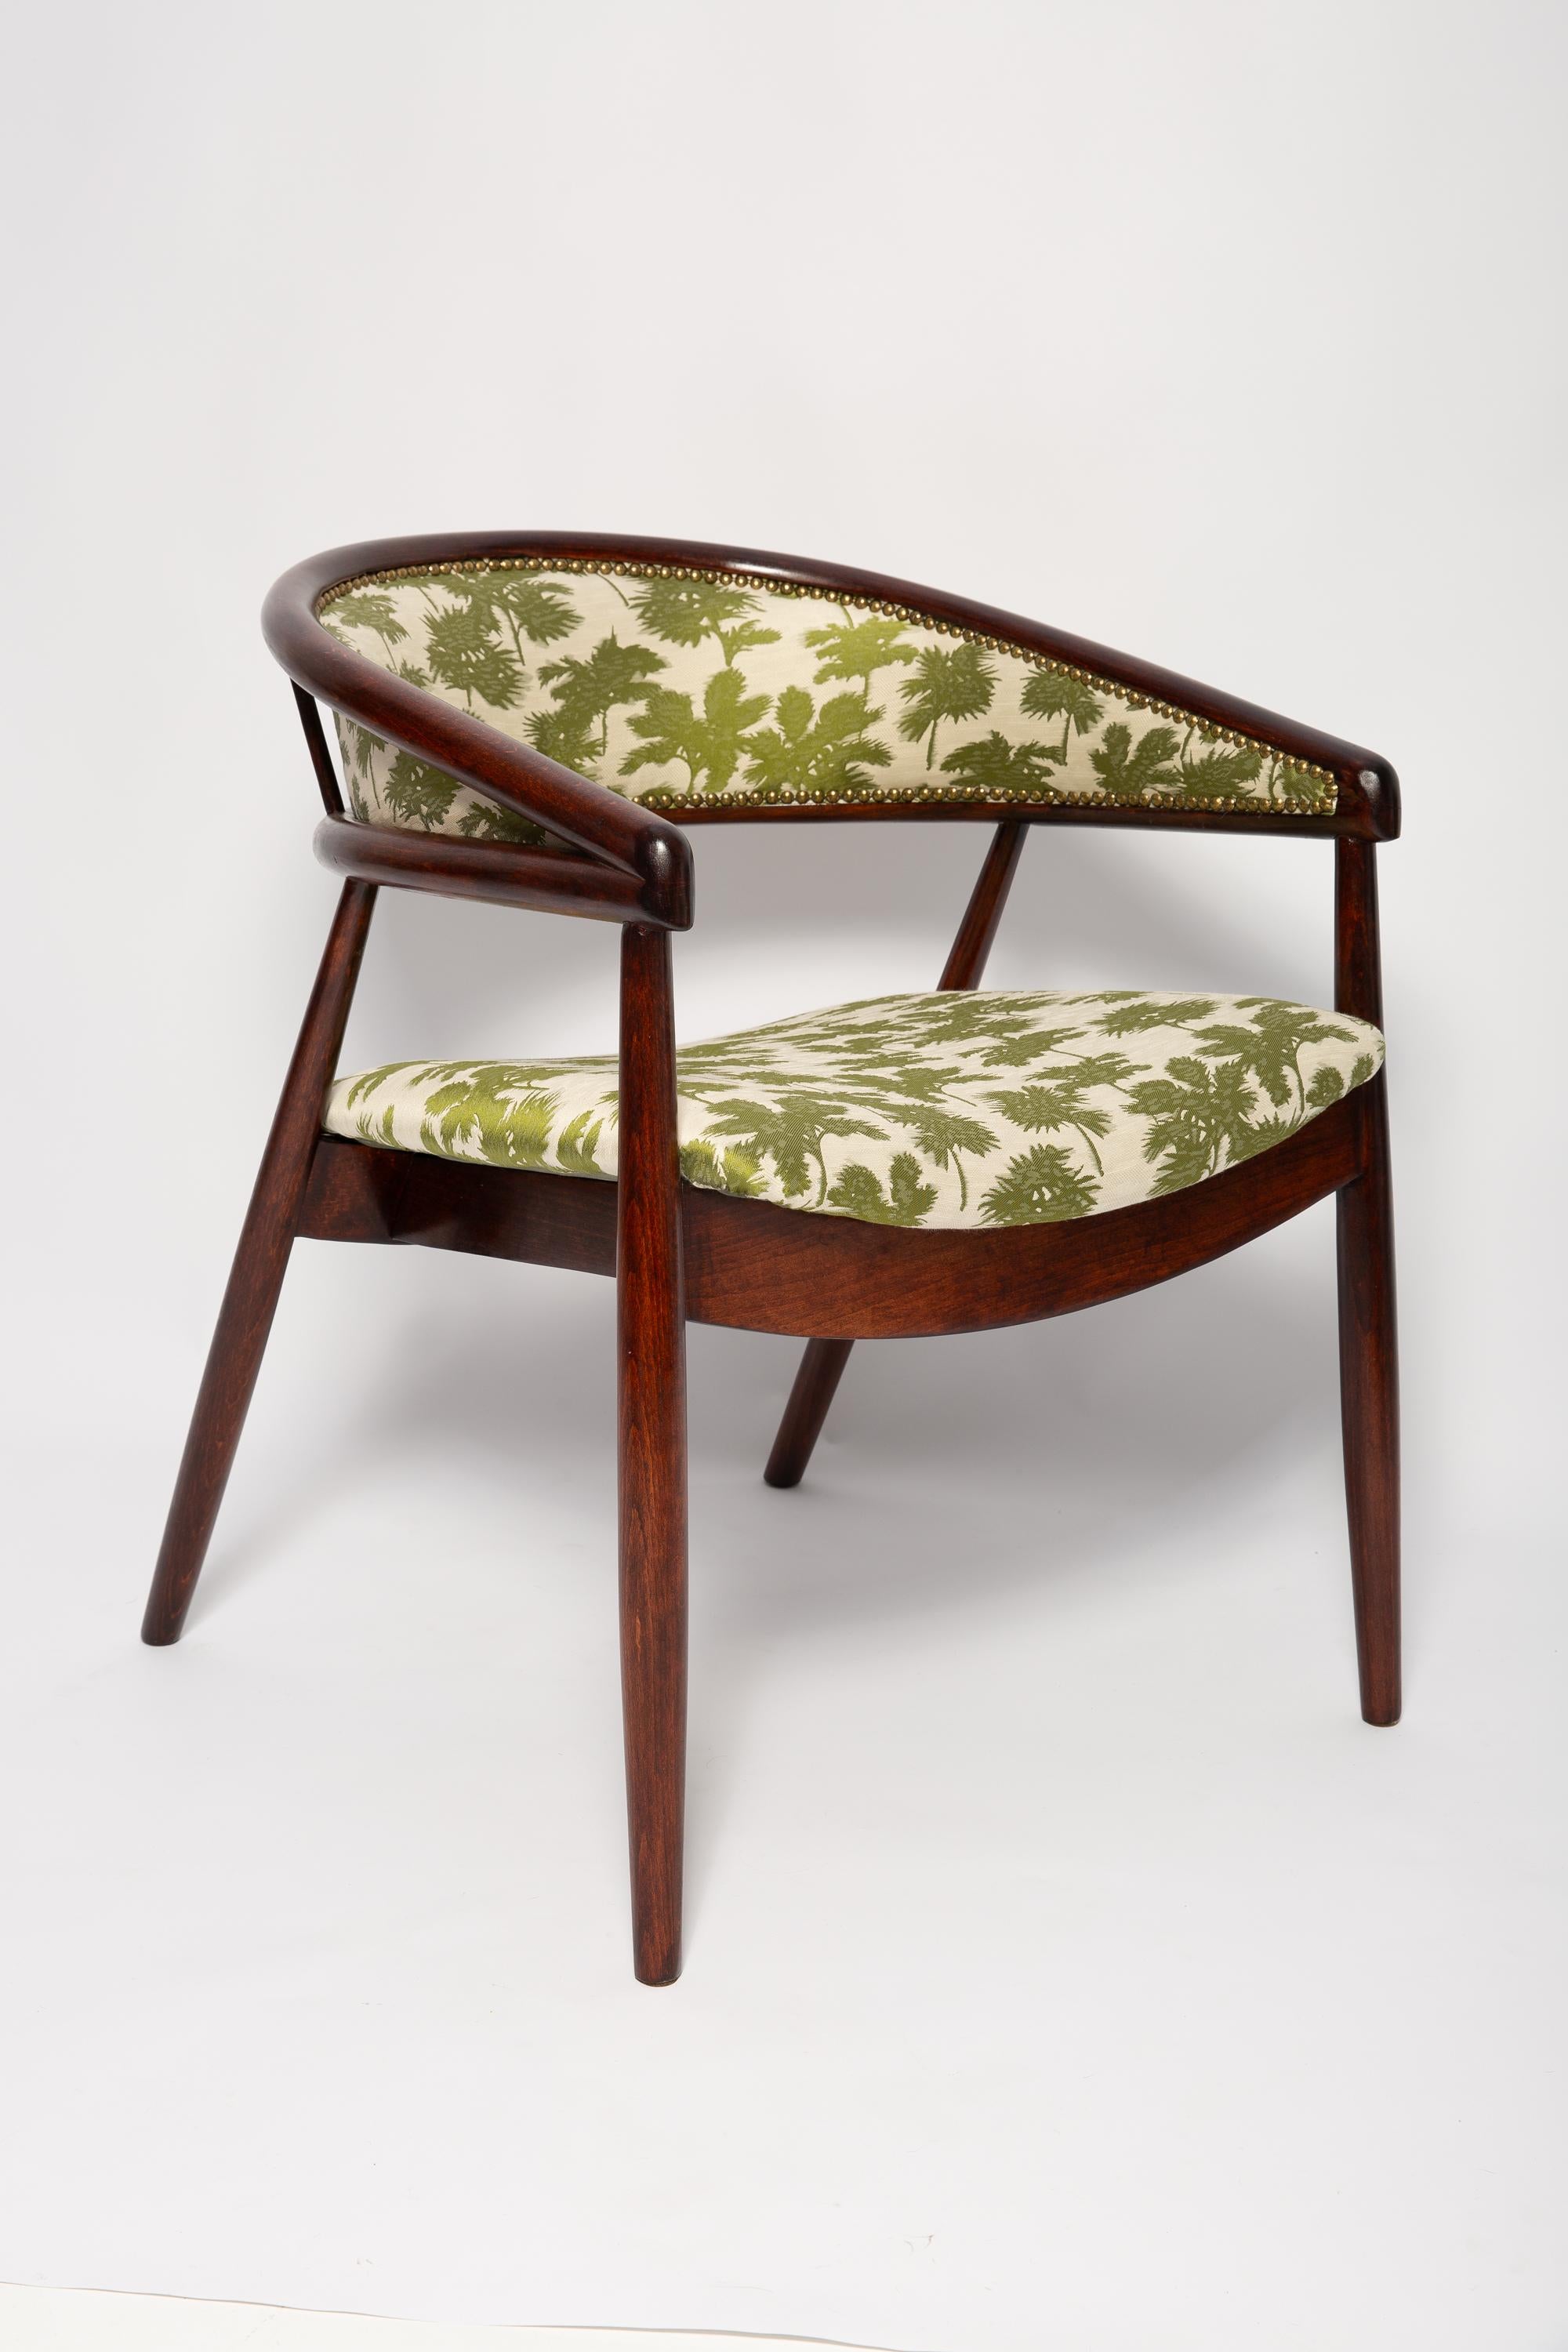 Fauteuils Radomsko B-3300, vers 1955. Il s'agit de fauteuils très confortables fabriqués dans les années 1960. Les fauteuils sont en bois courbé. 

Très unique, confortable et beau. Parfait pour les intérieurs minimalistes.
 Les fauteuils ont été